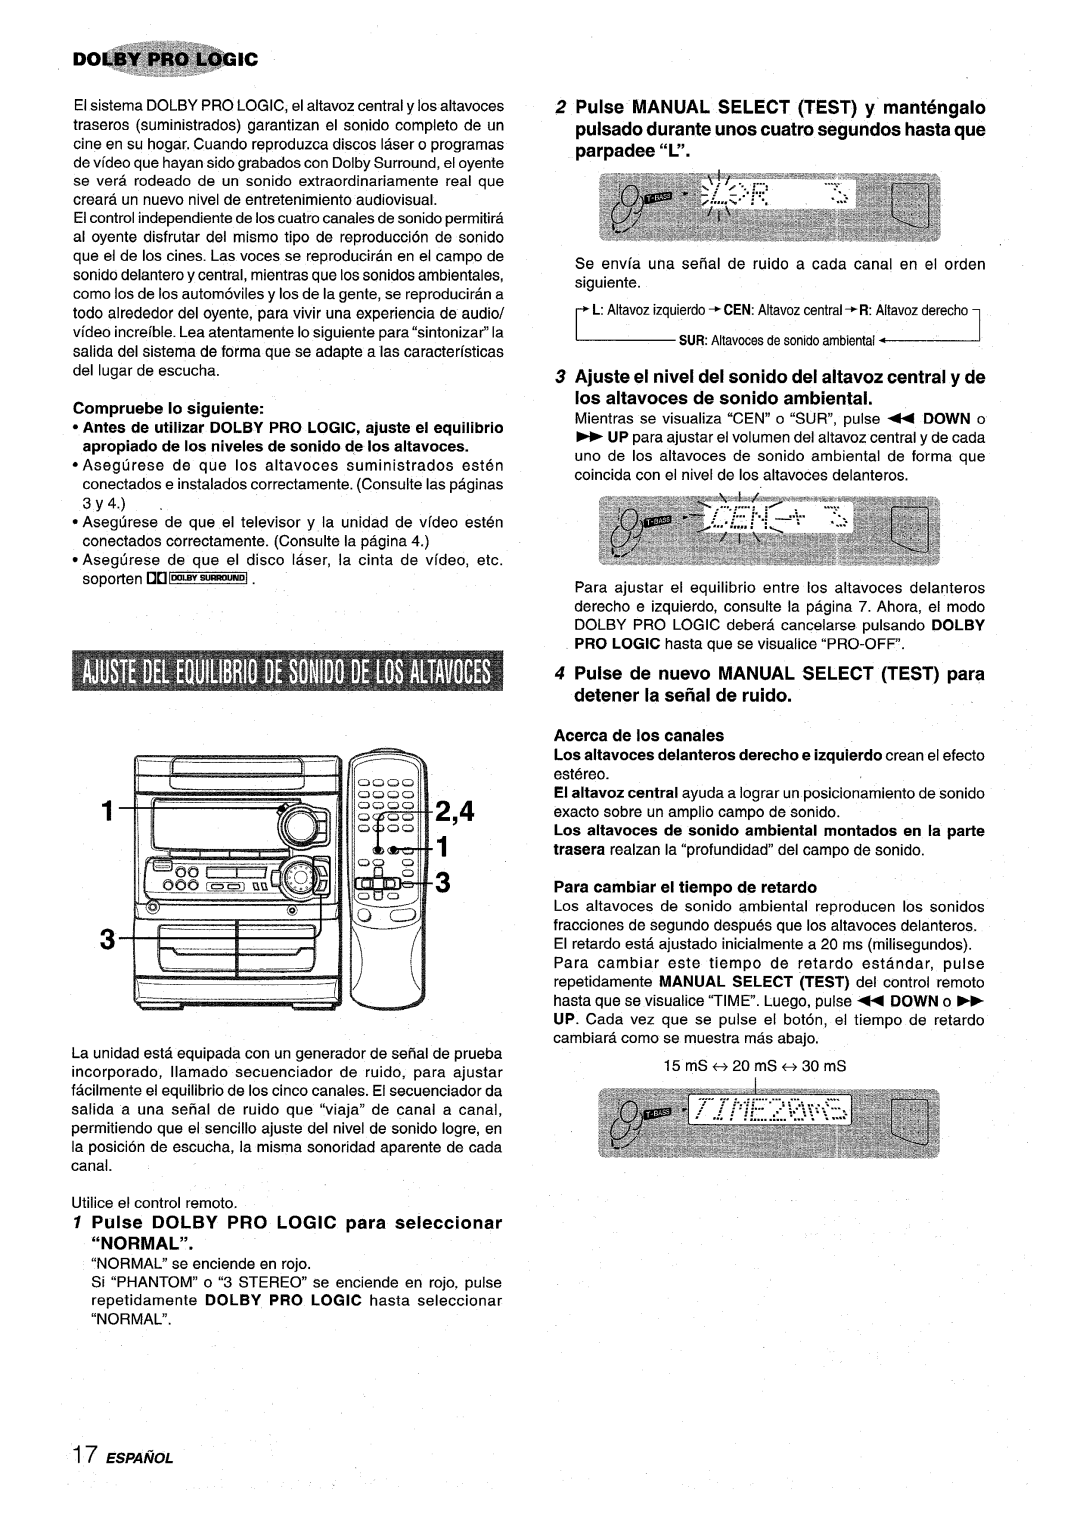 Sony NSX-MT320 Pulse de nuevo MANUAL SELECT TEST para detener la seiial de ruido, Acerca de Ios canales, ~..1 . ‘,---1i 